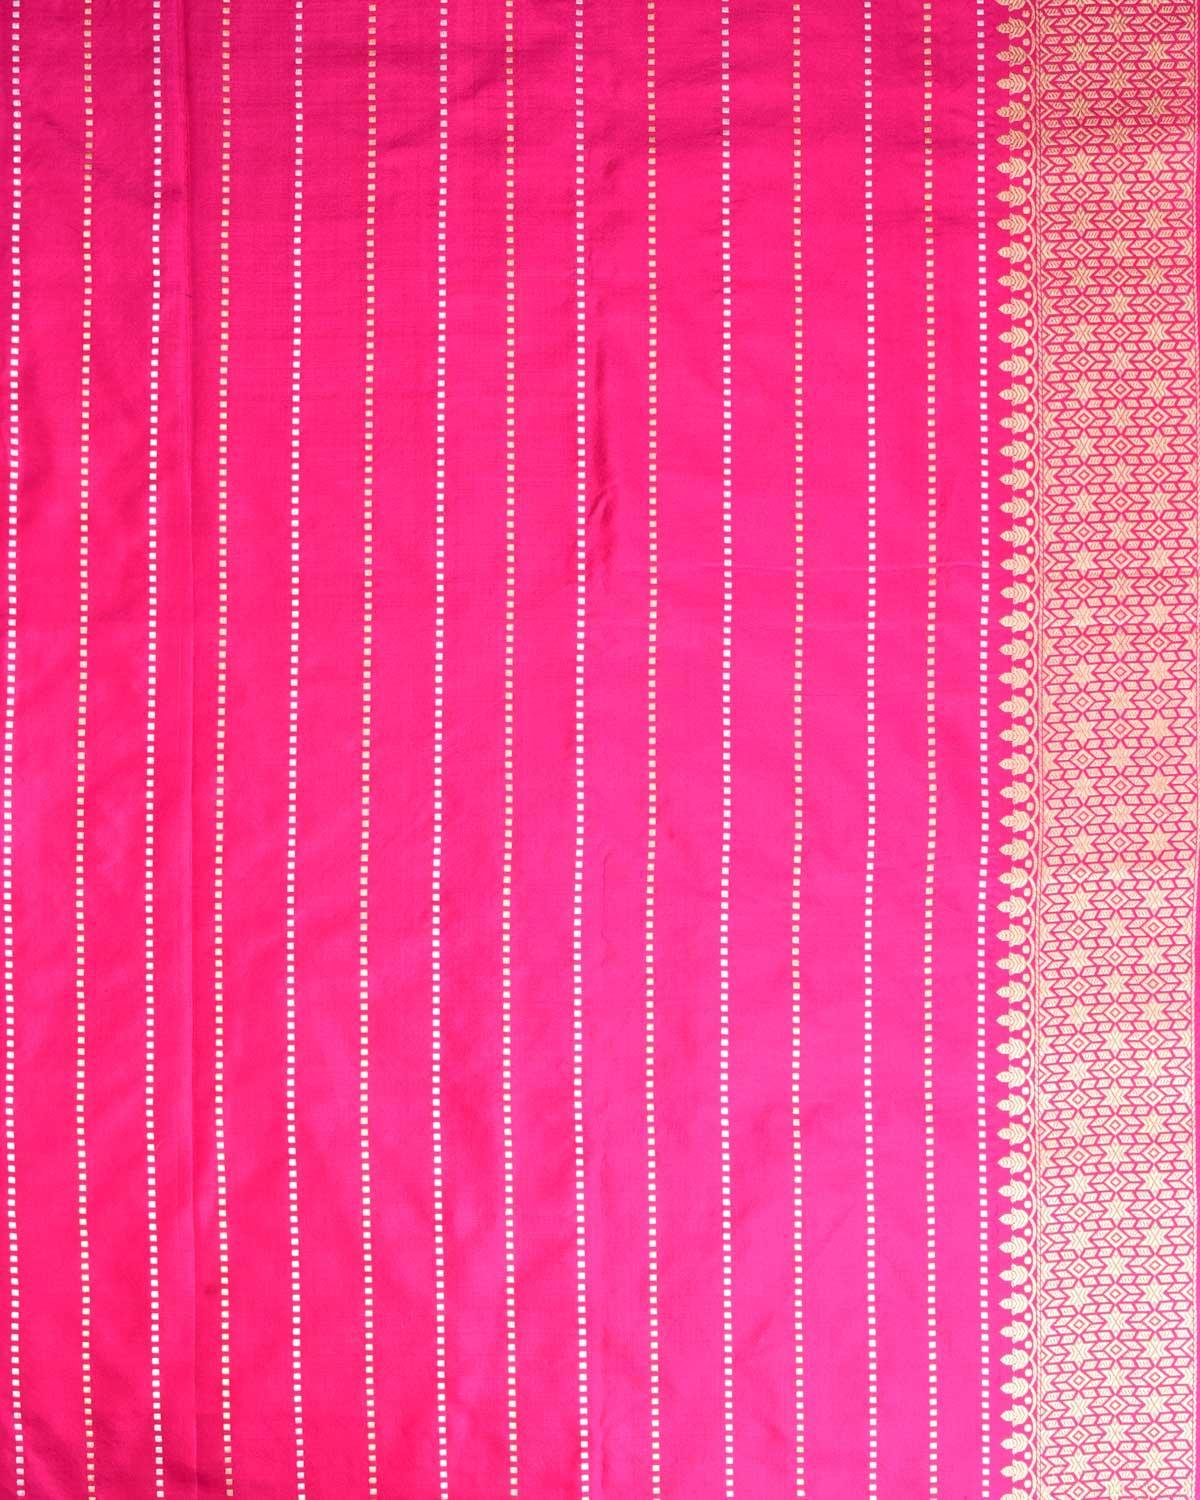 Mauve Banarasi Gold & Silver Zari Buti Kadhuan Brocade Handwoven Katan Silk Saree with Contrast Pink Border Pallu - By HolyWeaves, Benares